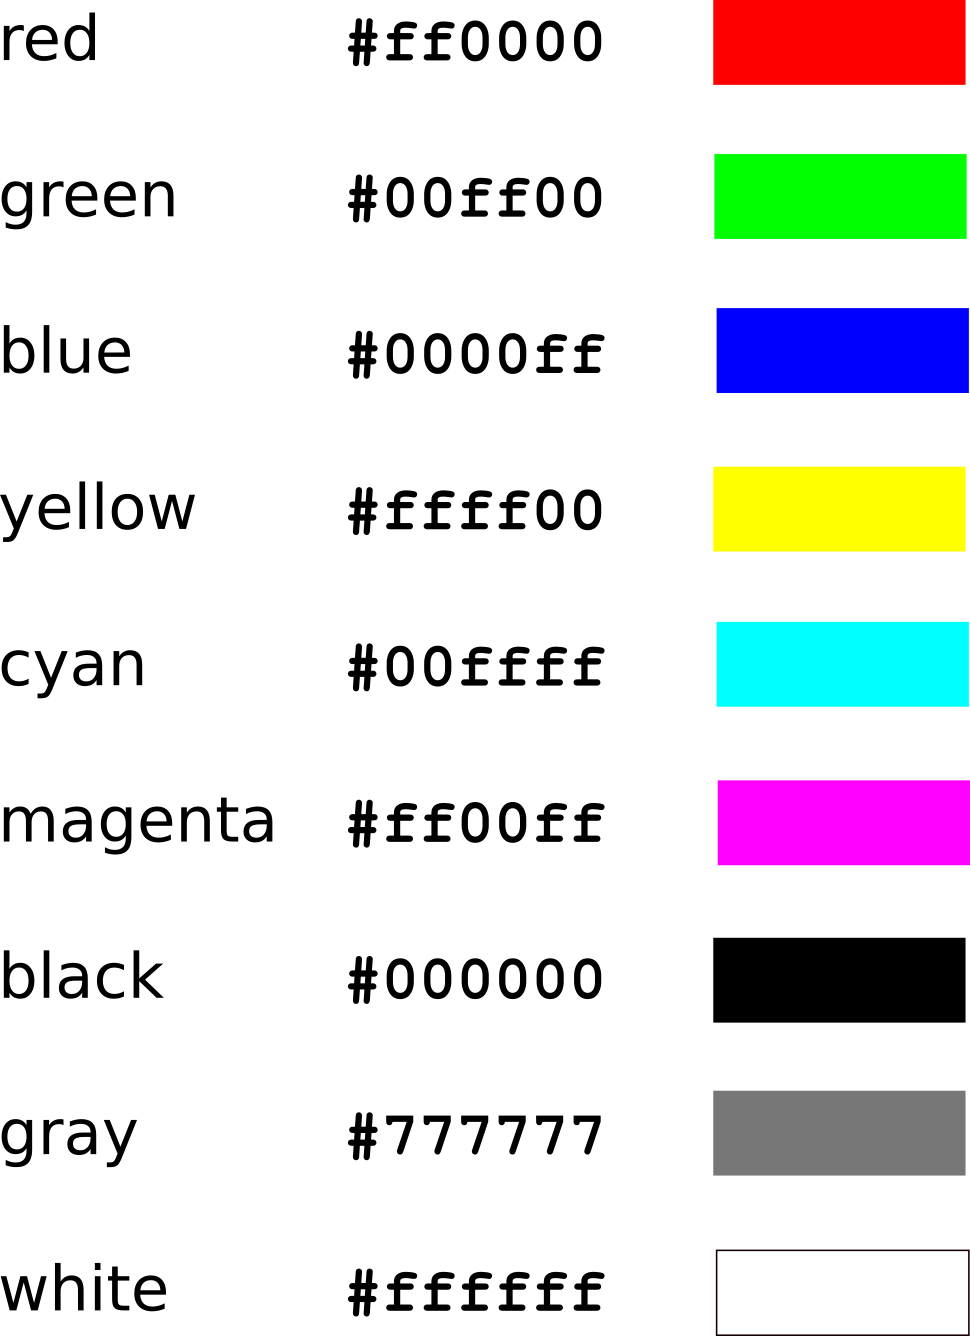 Hex codes of a few colors